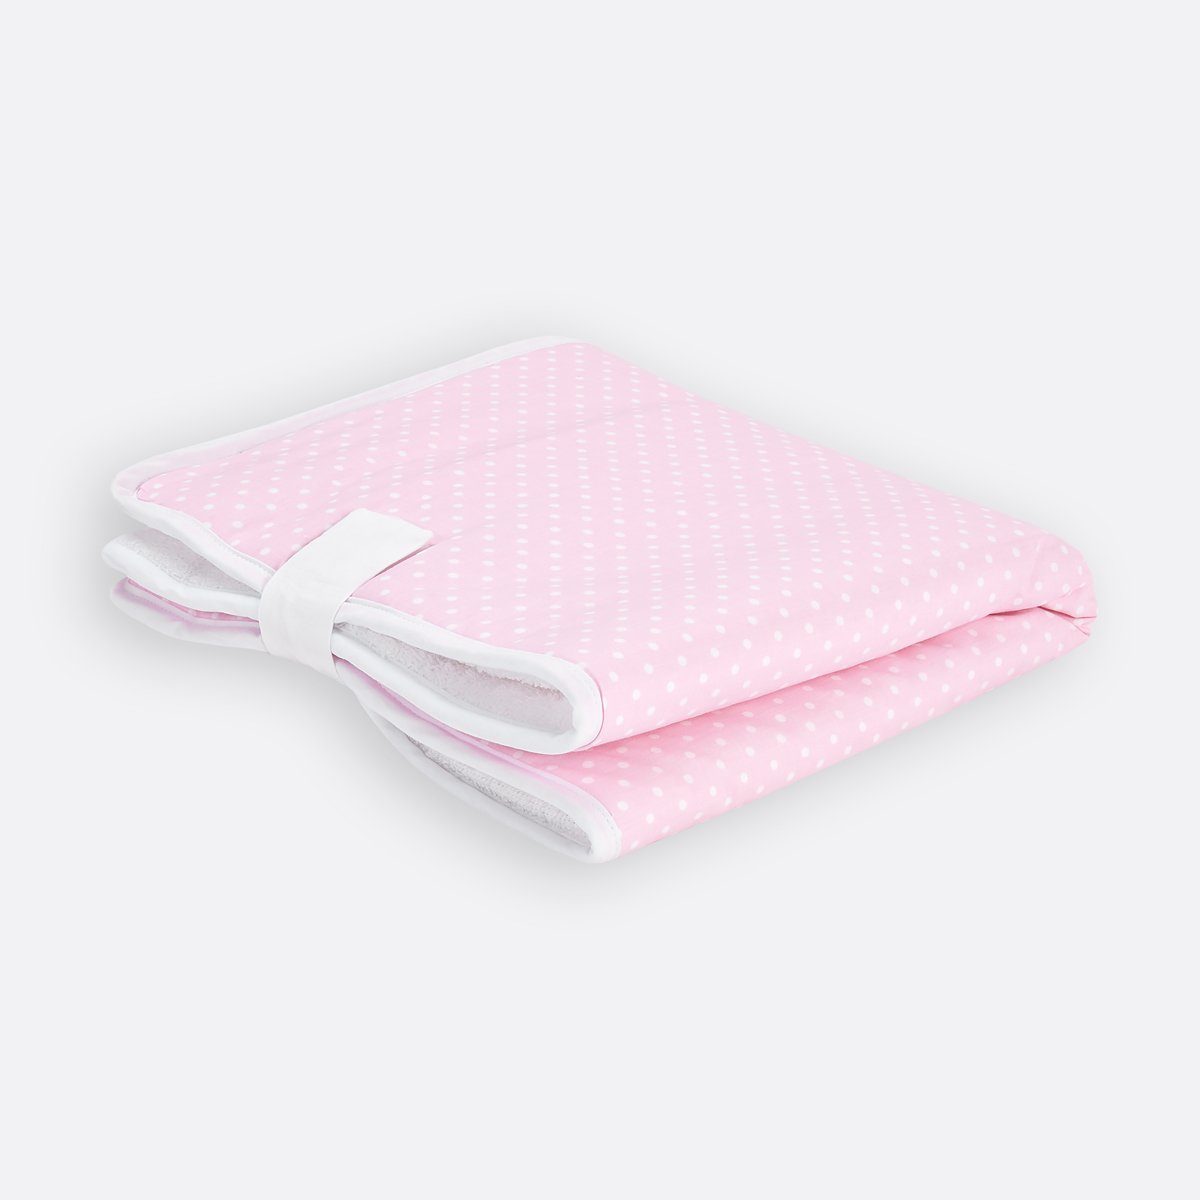 KraftKids Wickelauflage weiße Punkte auf Rosa, Reisewickelunterlage aus 3 Stoffsichten, 100% Baumwolle, Innen wasserundurchlässig, faltbar mit Klettverschluss | Wickelauflagen